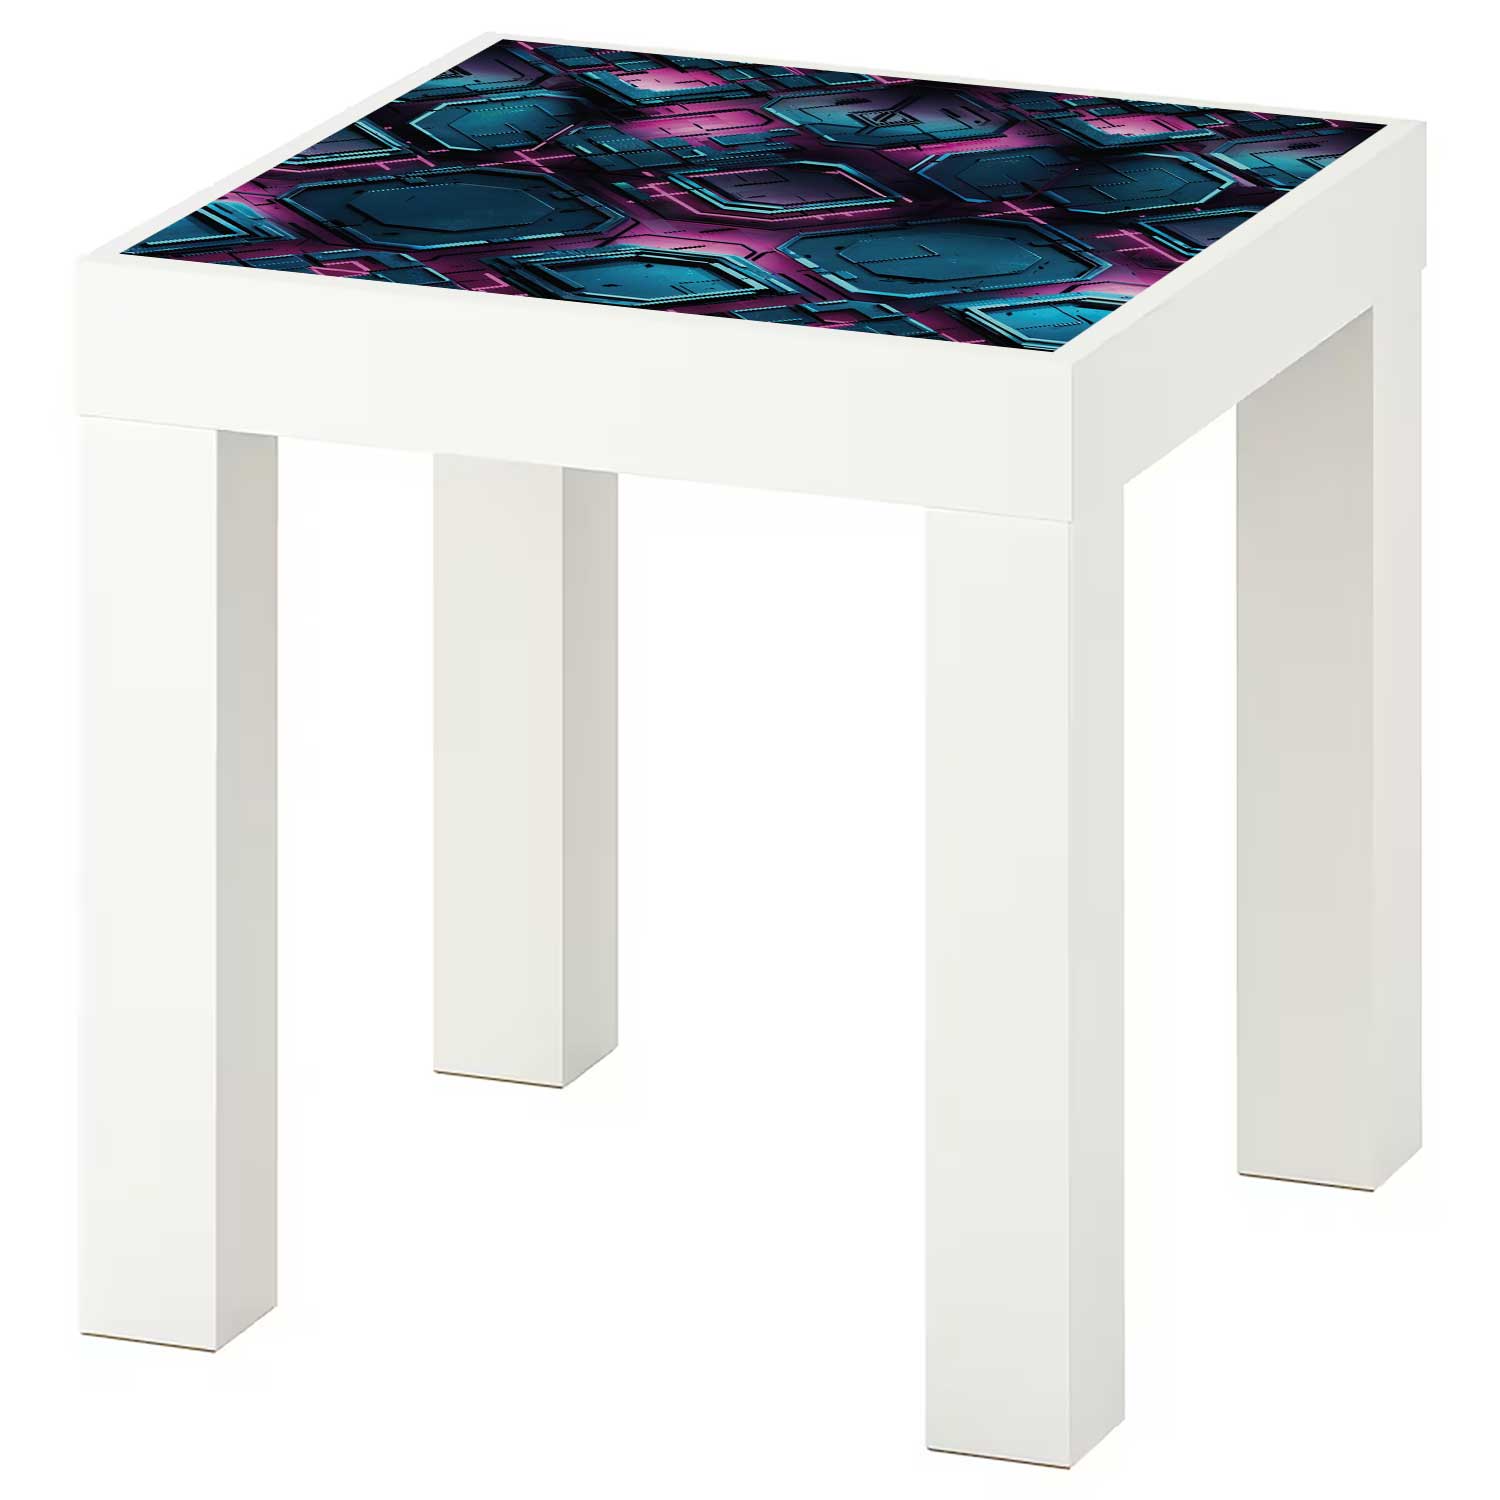 Möbelfolie für IKEA Lack Tisch 35x35 cm 'Cyber Sculpt'